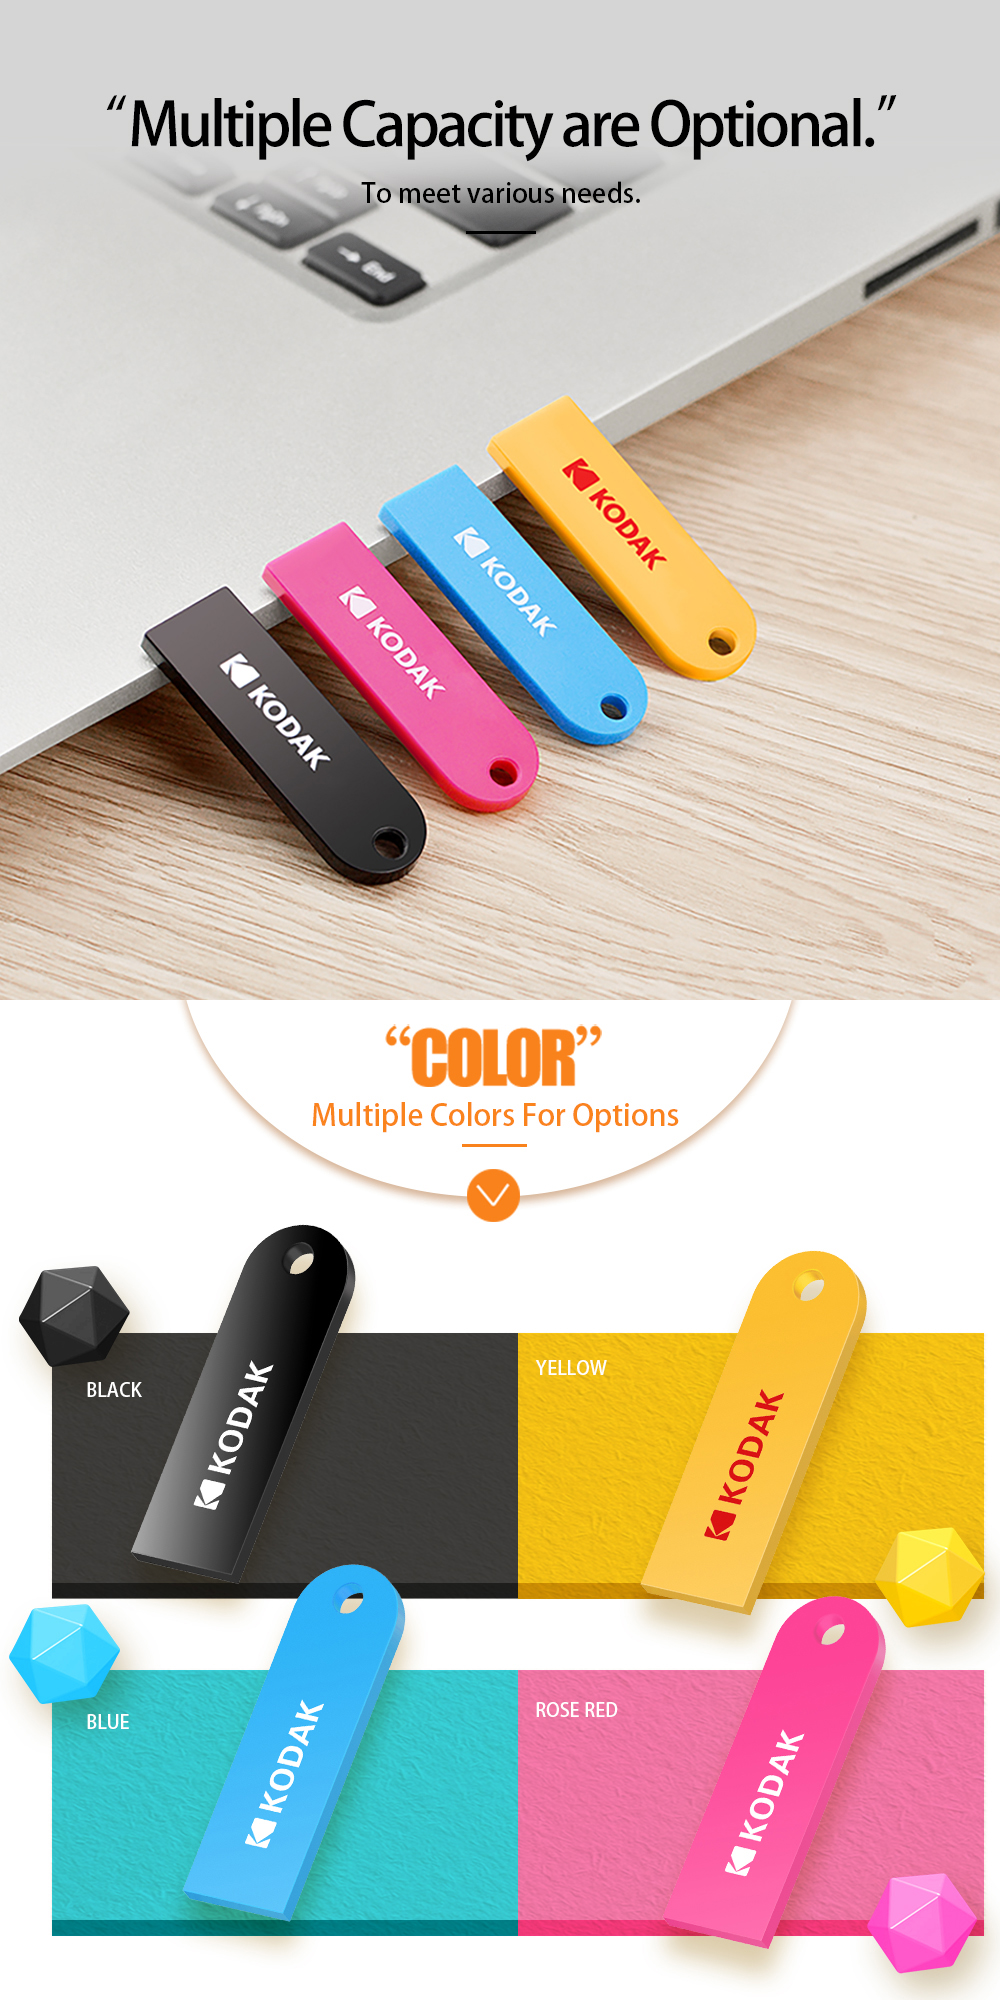 Kodak-K212-USB20-Small-USB-Flash-Drive-16GB-32GB-64GB-Memory-Stick-U-Disk-Pen-Drive-ABS-Colorful-Por-1566541-6